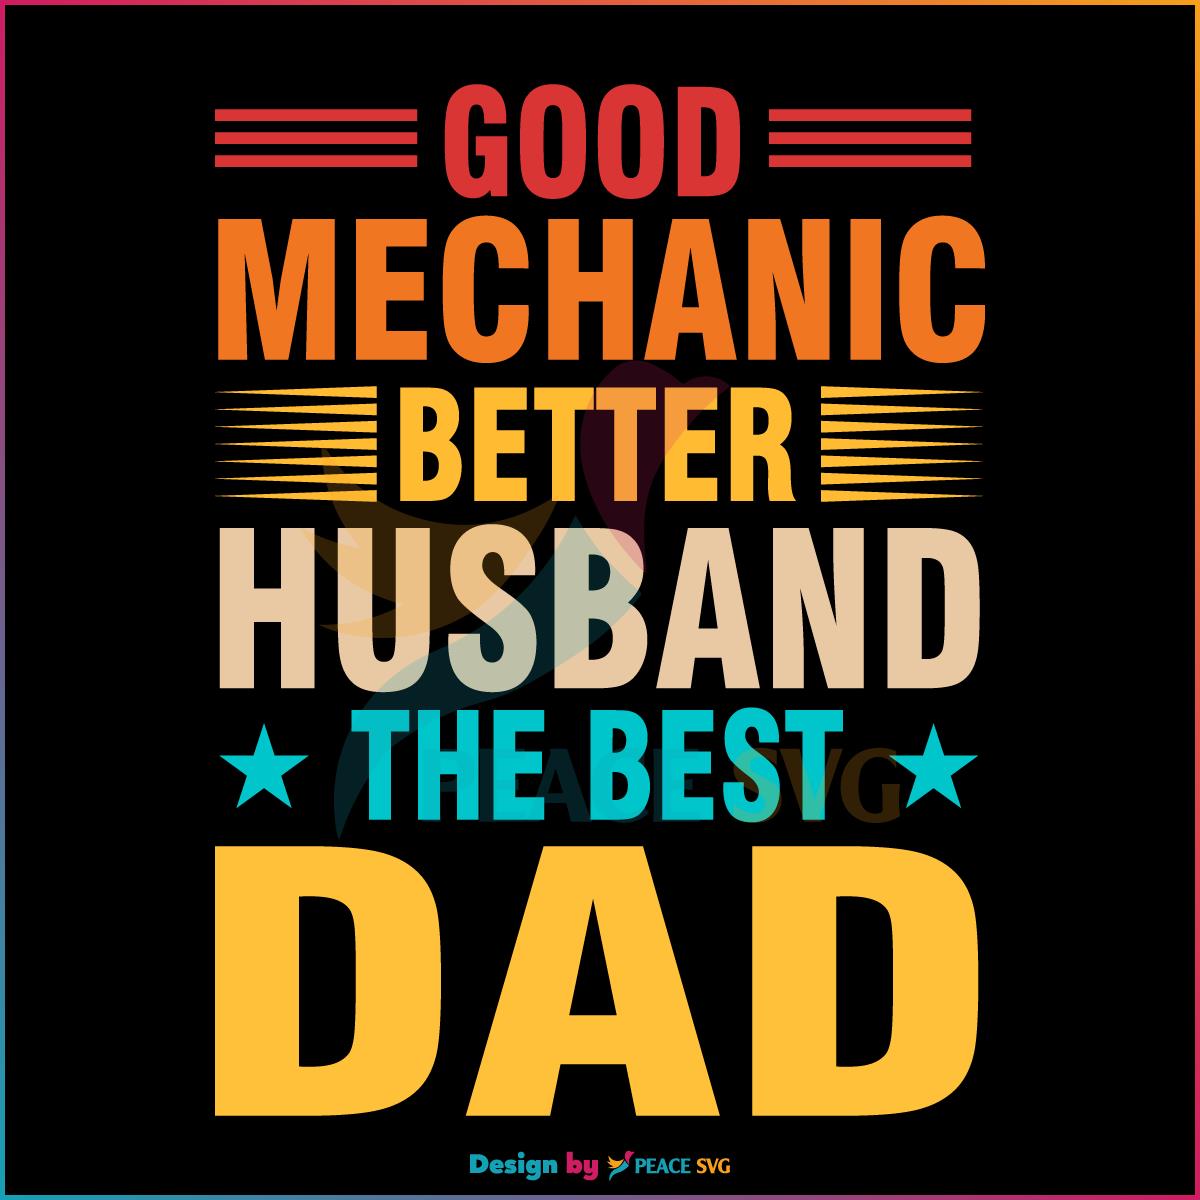 Good Mechanic Better Husband The Best Dad SVG